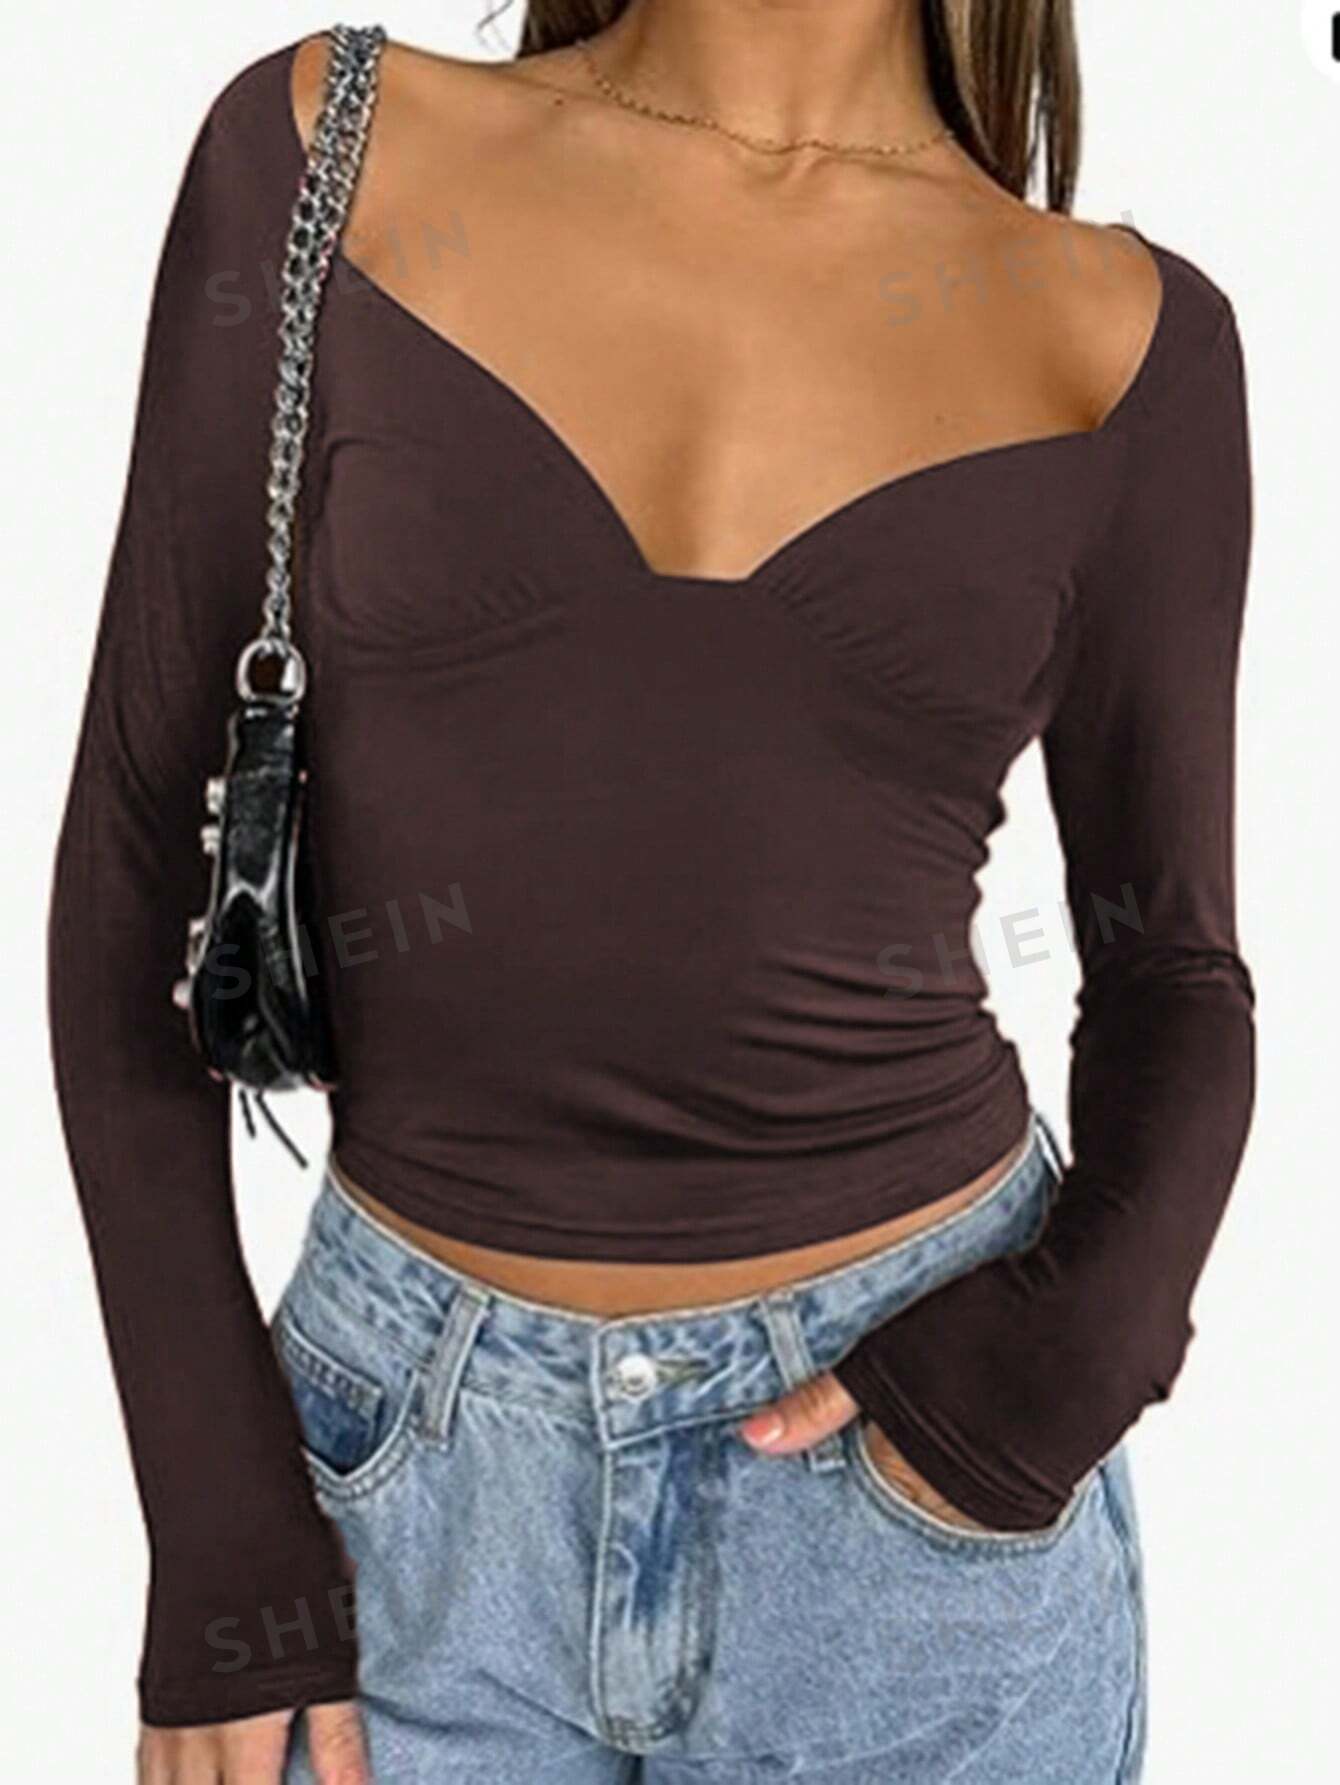 shein essnce трехцветное облегающее боди футболка с длинными рукавами многоцветный SHEIN LUNE Женская футболка с круглым вырезом и короткими рукавами, коричневый